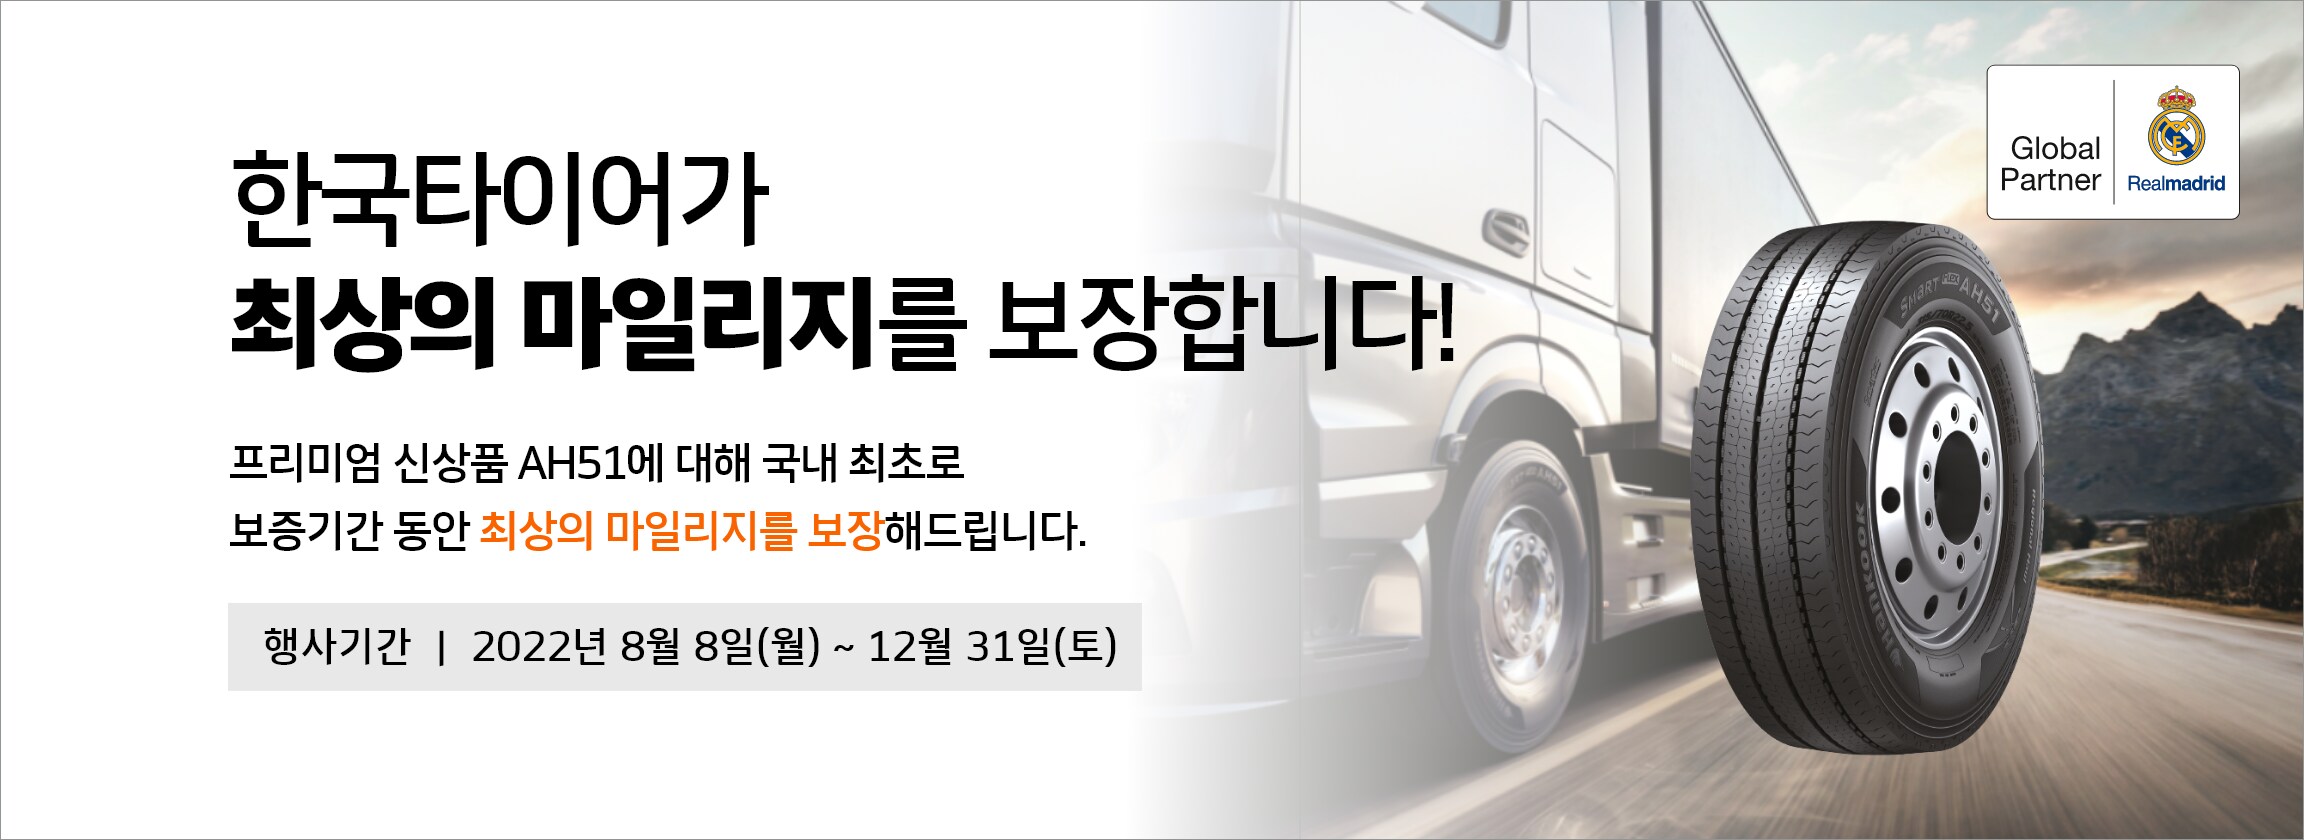 한국타이어, 상용차 타이어 마일리지 보증 프로그램 운영